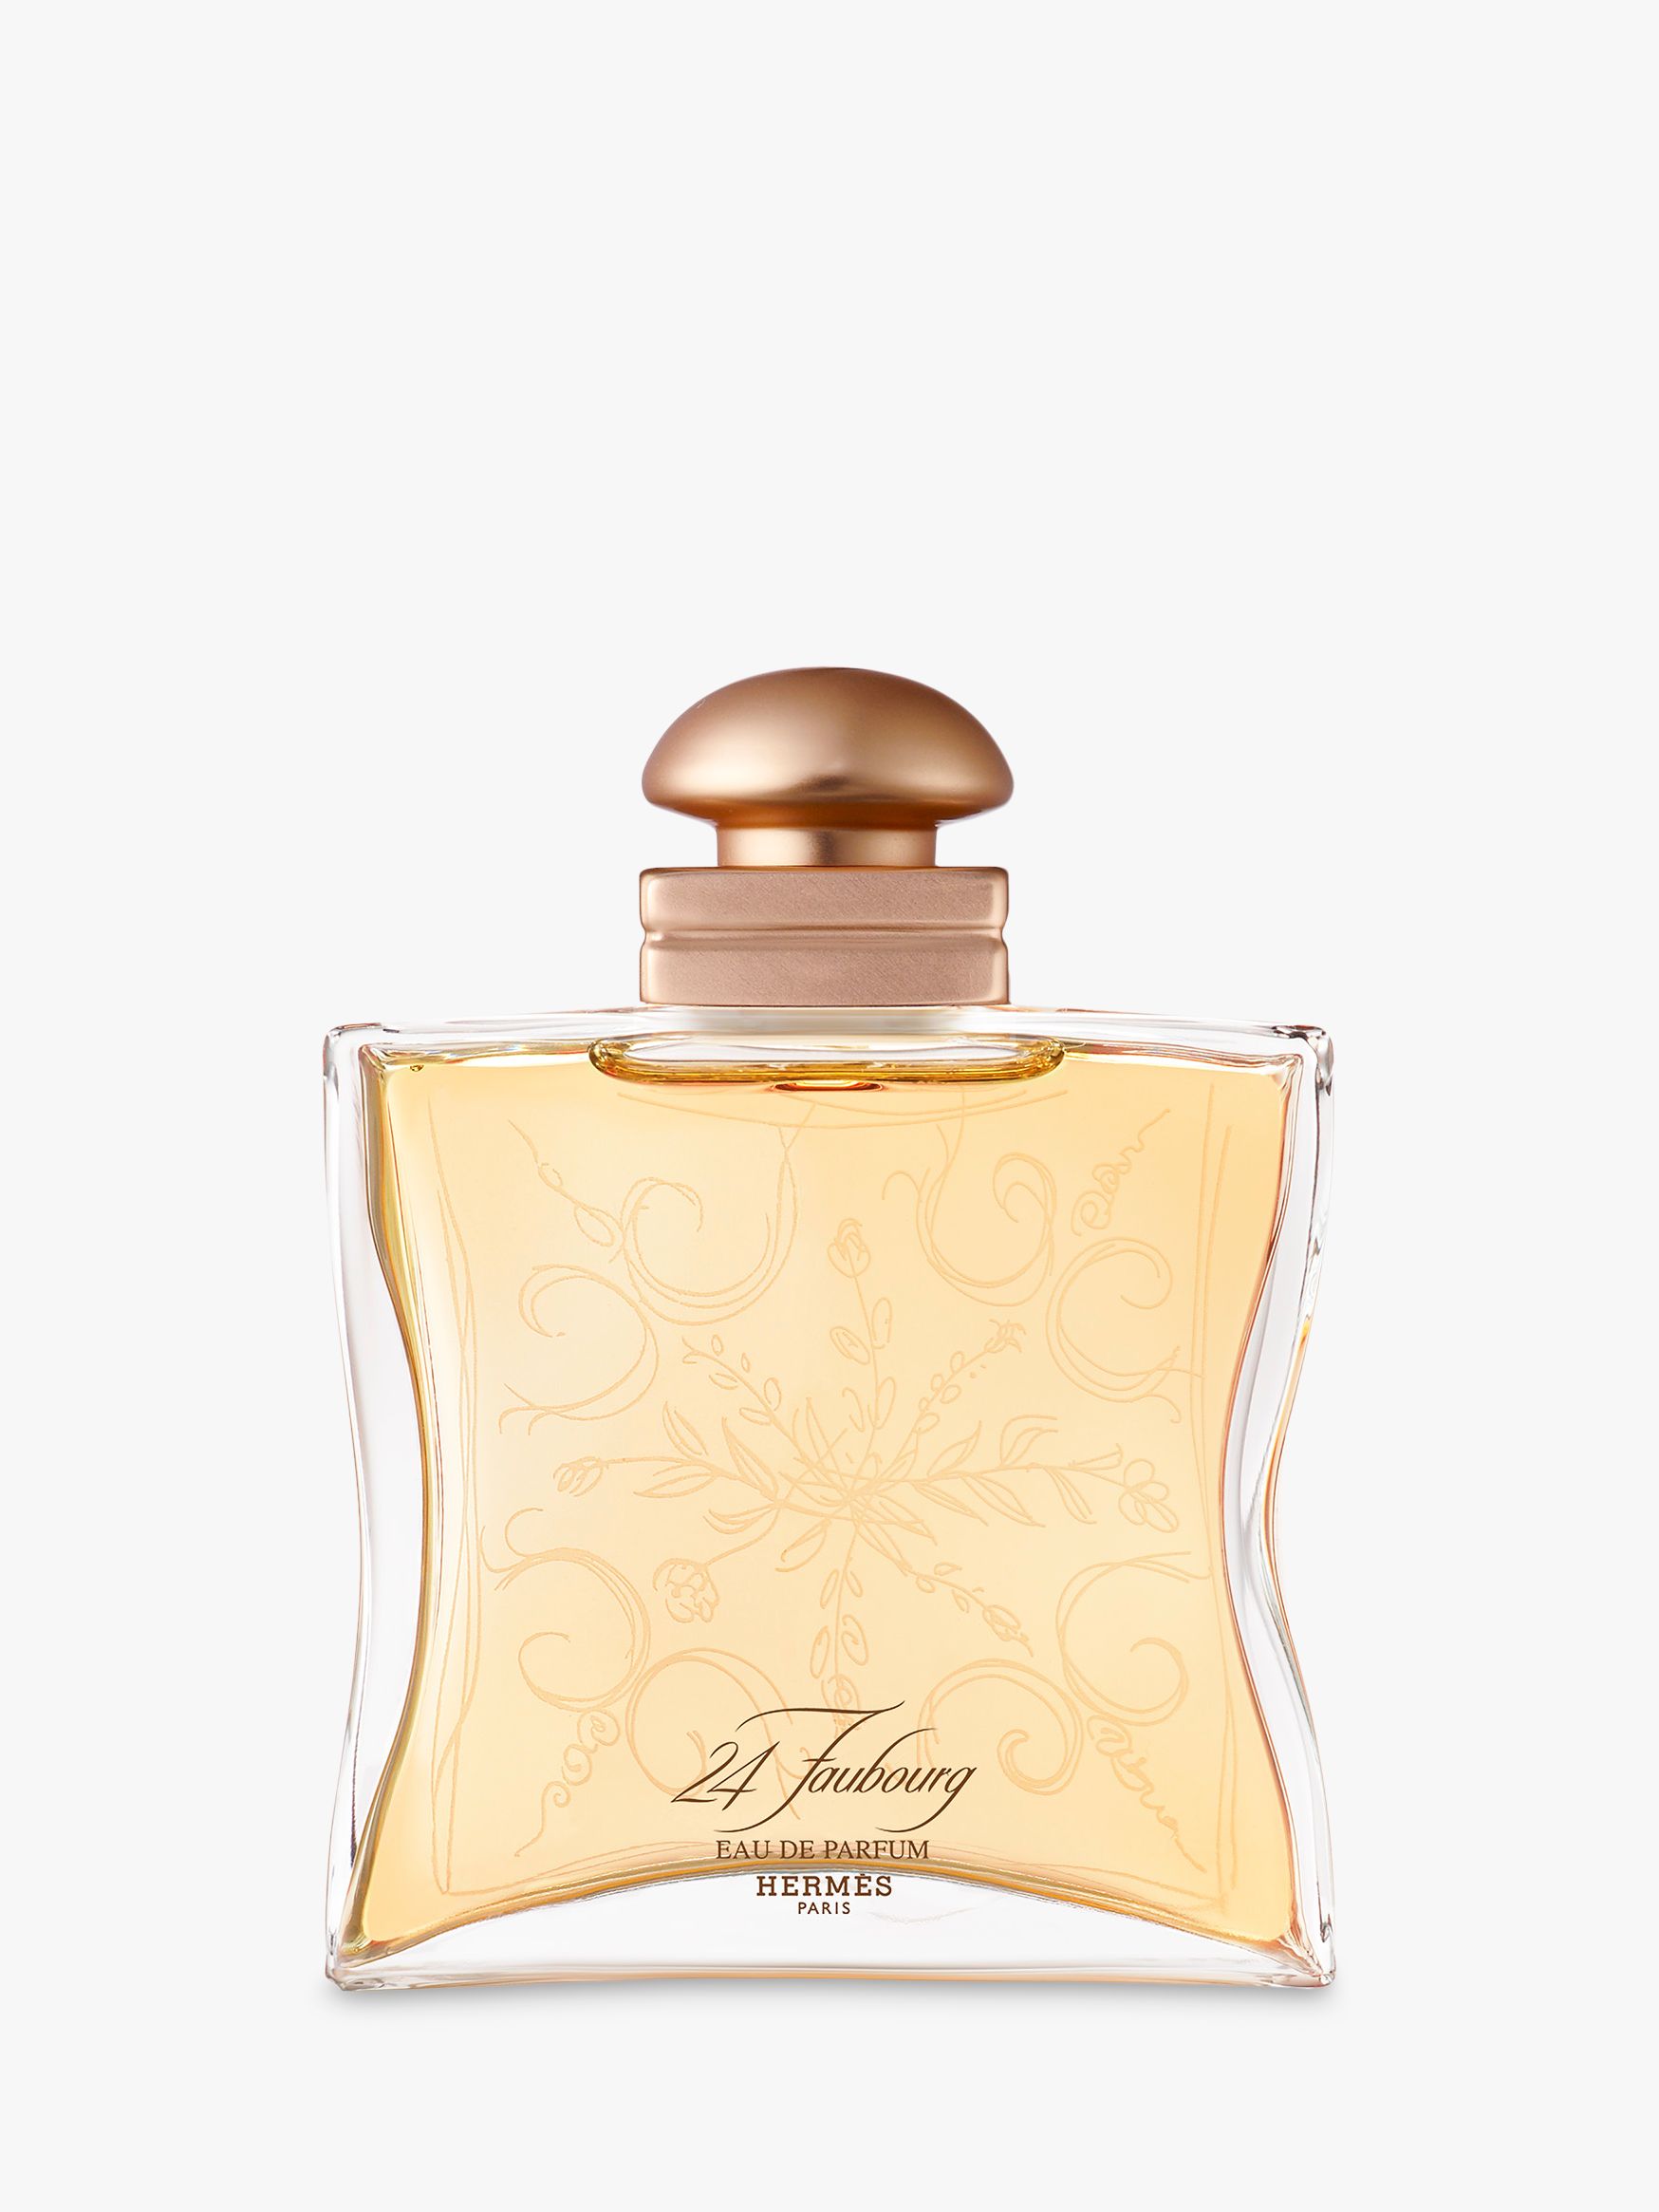 HERM S 24  Faubourg  Eau de Parfum at John Lewis Partners